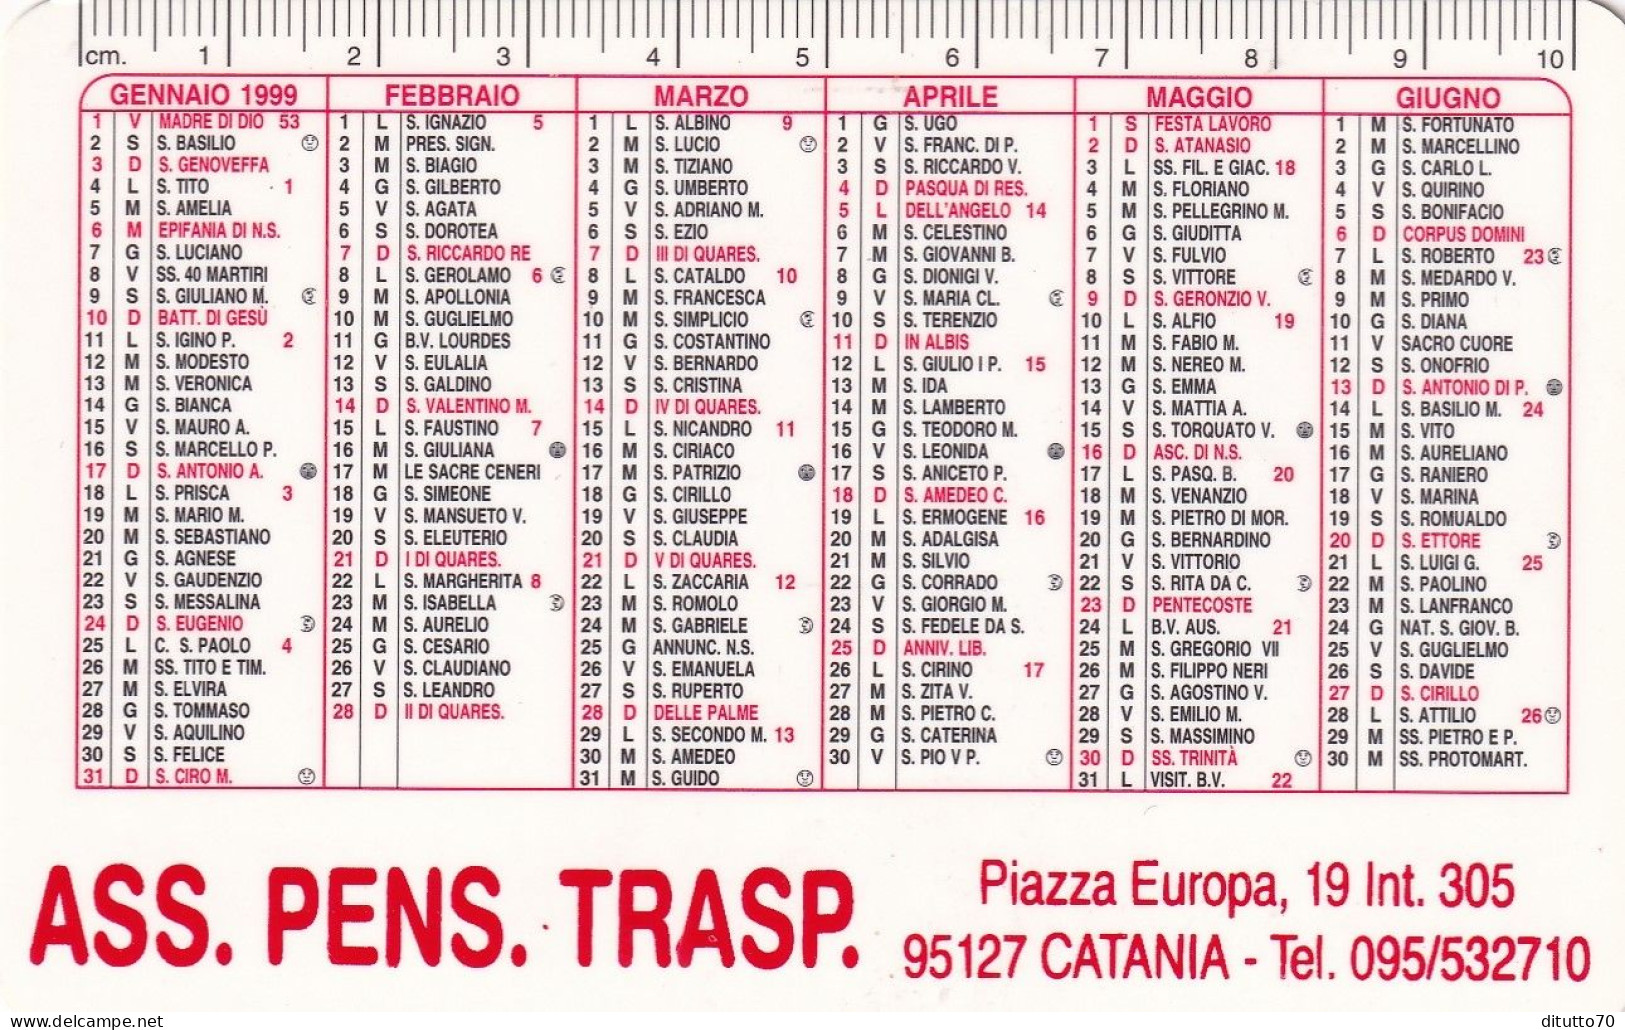 Calendarietto - Ass.pens.trasp. - Catania - Anno 1999 - Small : 1991-00